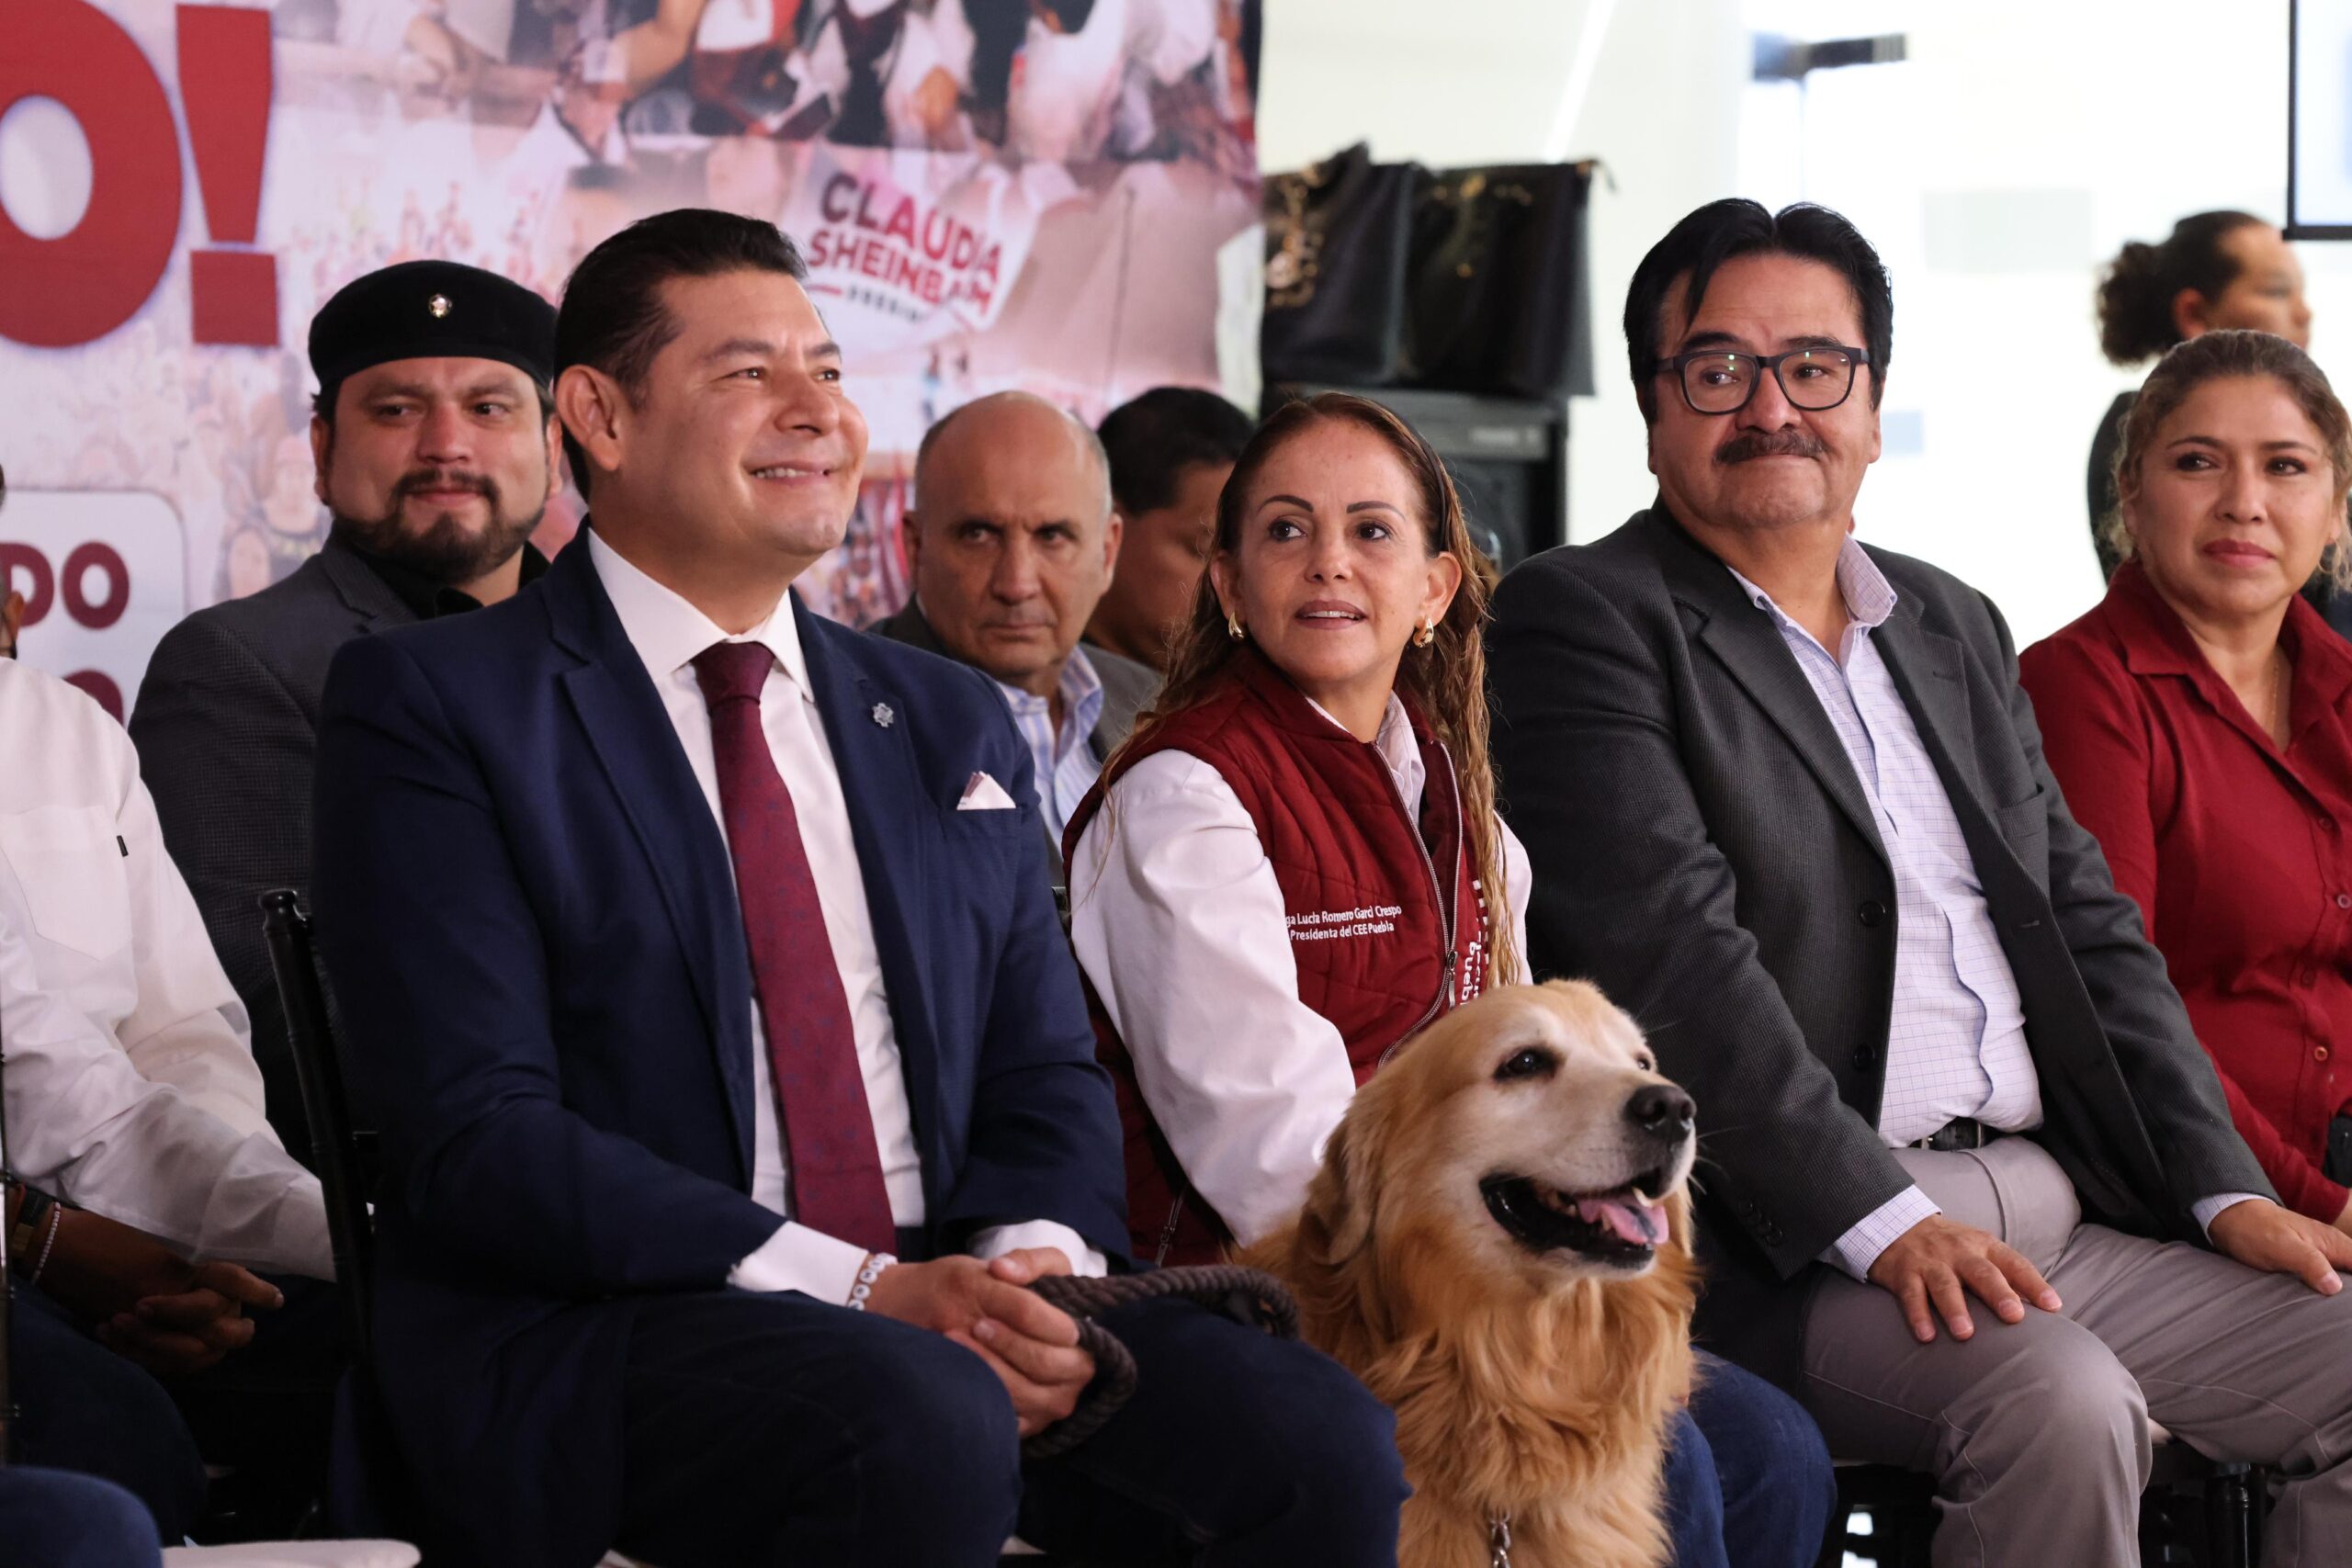 ¡Alejandro Armenta promete transformar Puebla! lista para la victoria en las urnas